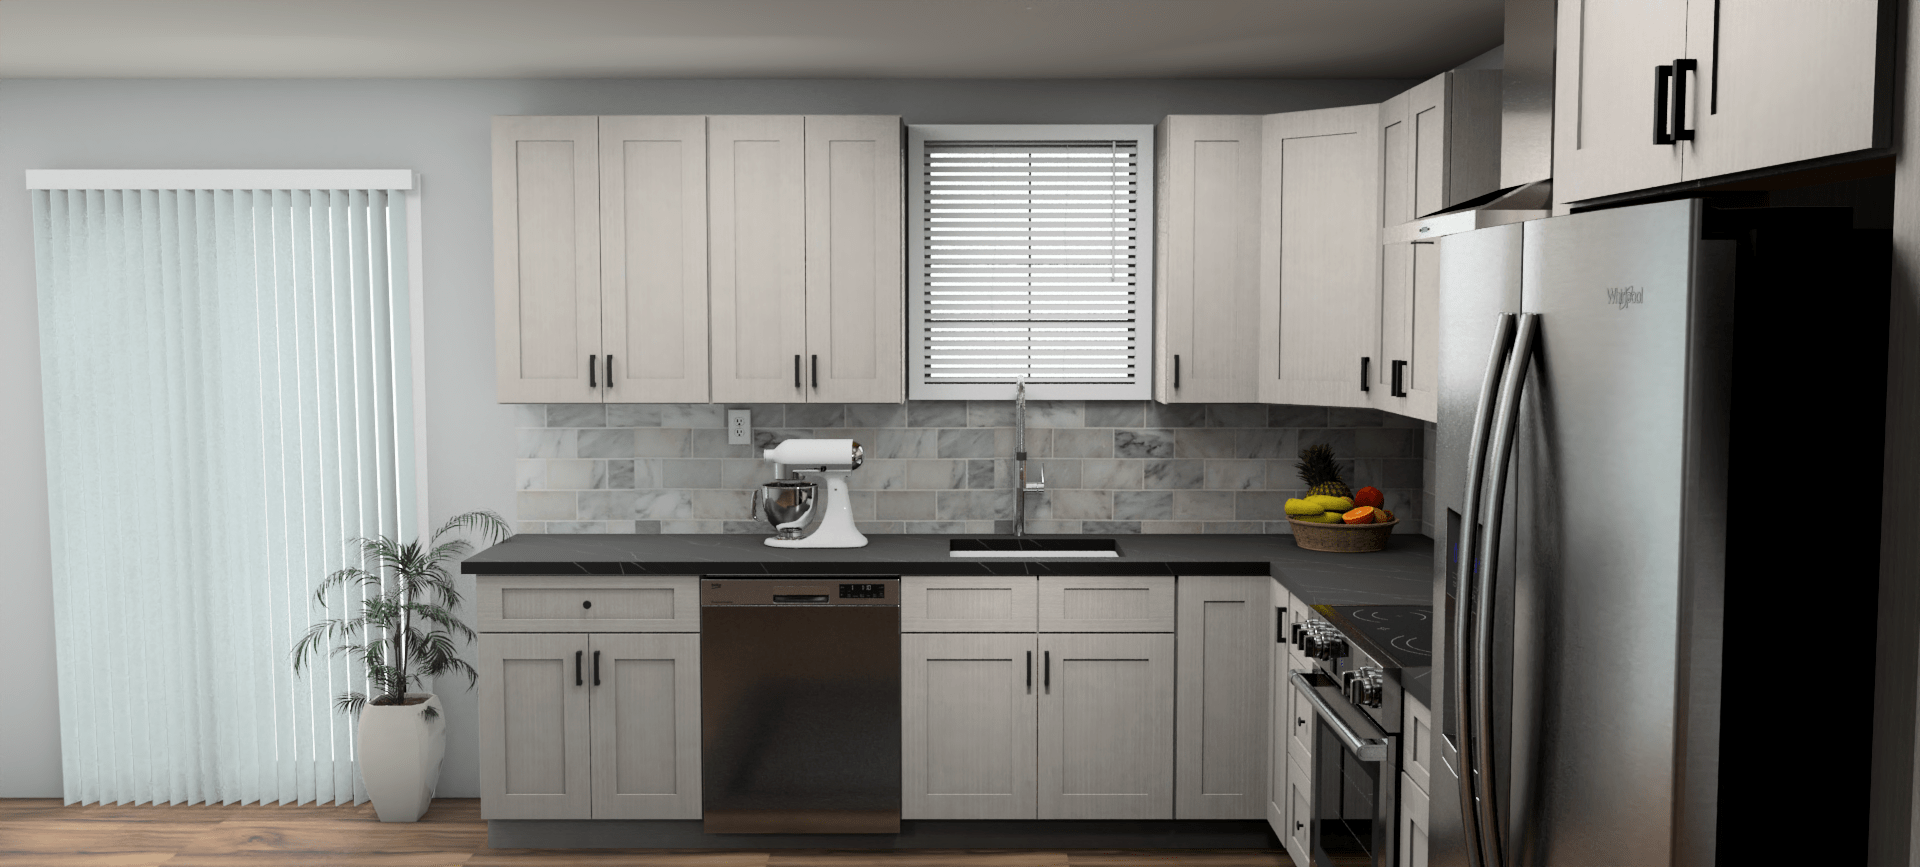 Fabuwood Allure Galaxy Horizon 10 x 13 L Shaped Kitchen Side Layout Photo